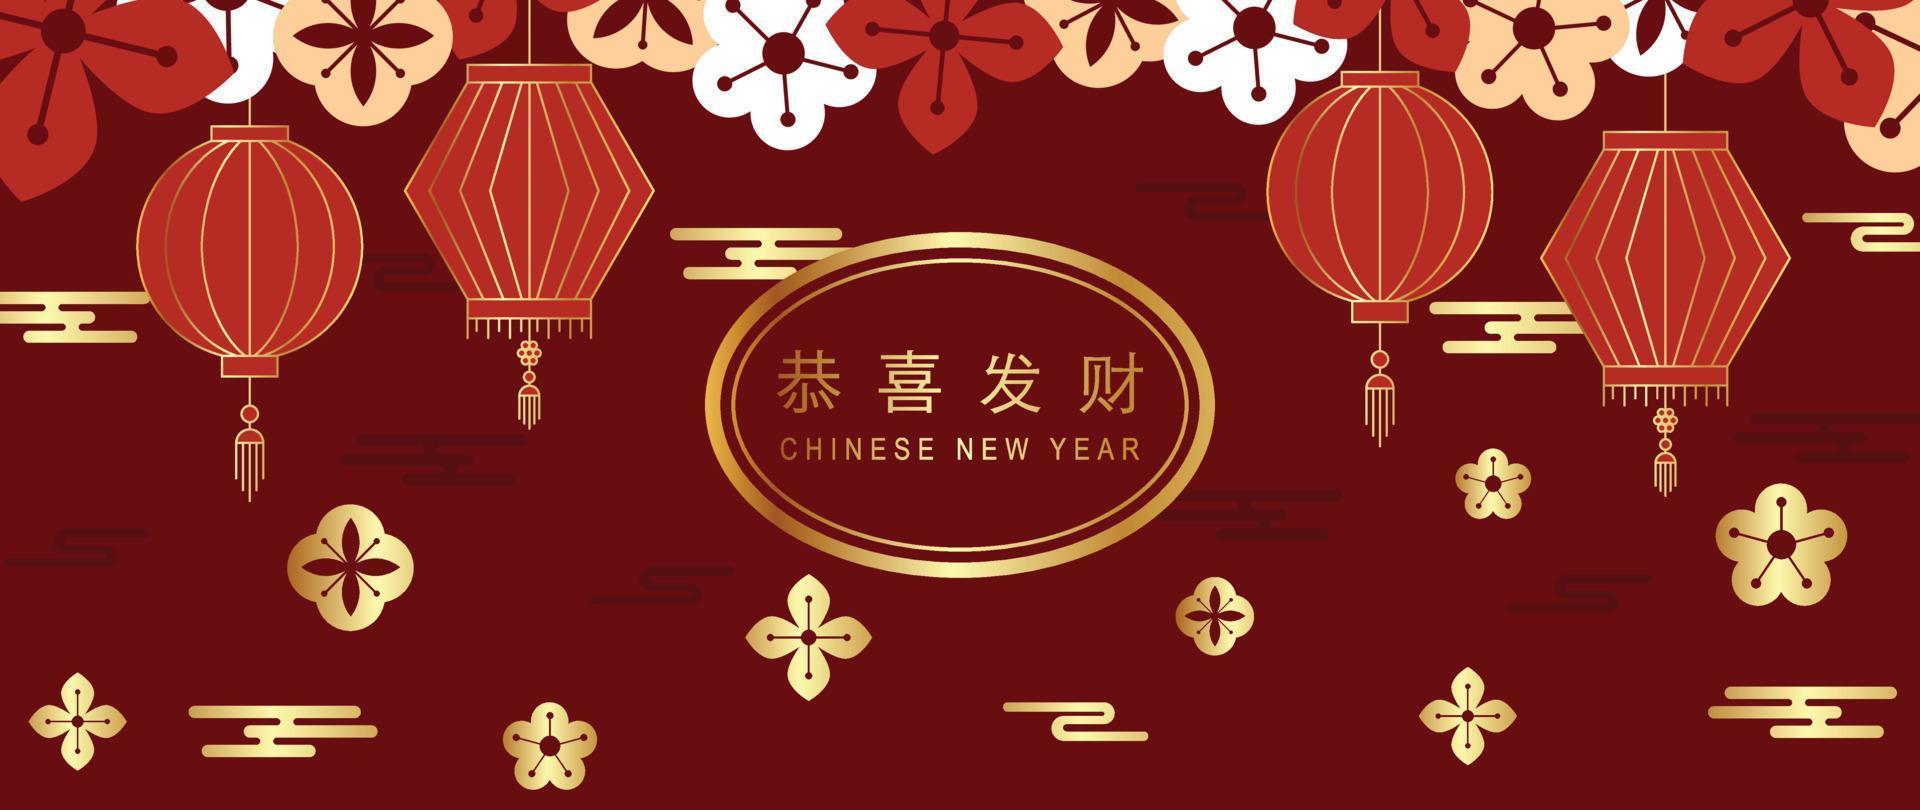 vecteur de fond de luxe du nouvel an chinois. fleurs élégantes avec texture dorée dégradée et lanterne orientale suspendue sur fond rouge motif chinois. illustration de conception pour papier peint, carte, affiche.